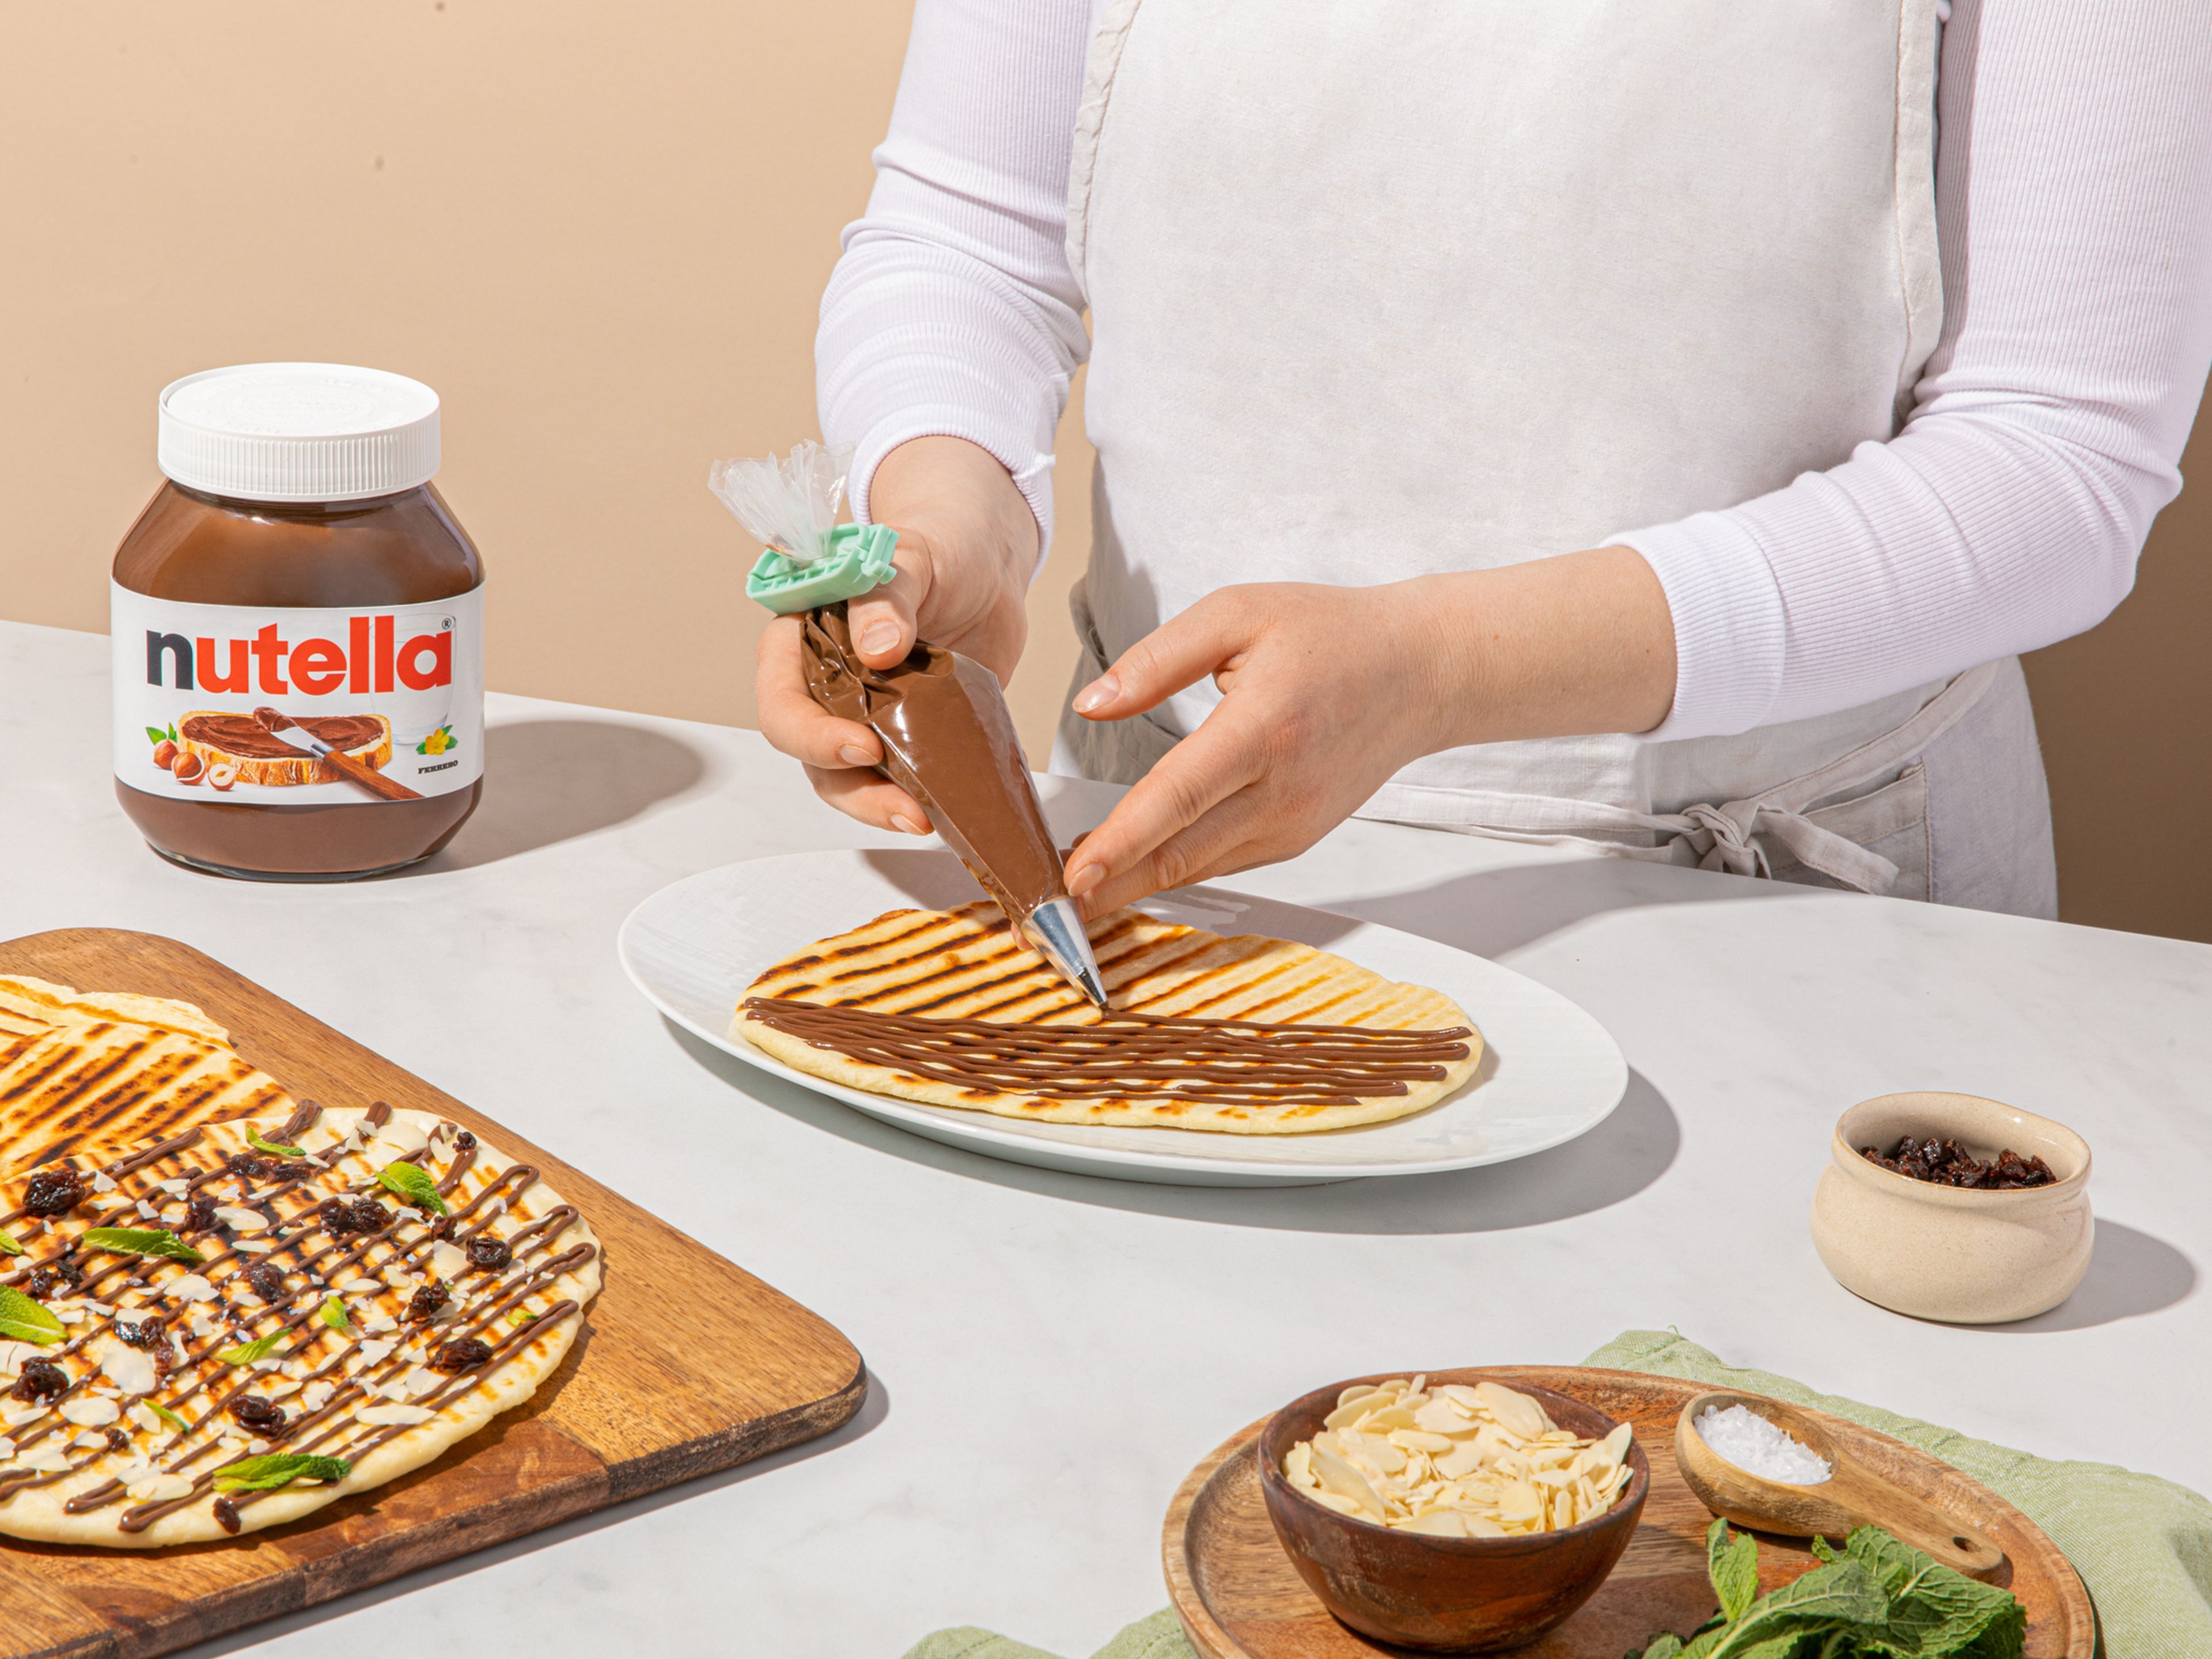 nutella® in einen Spritzbeutel füllen und vorsichtig in Linien über die Naan verteilen. Mit Rosinen, Mandeln, Minze und etwas Meersalz garnieren.